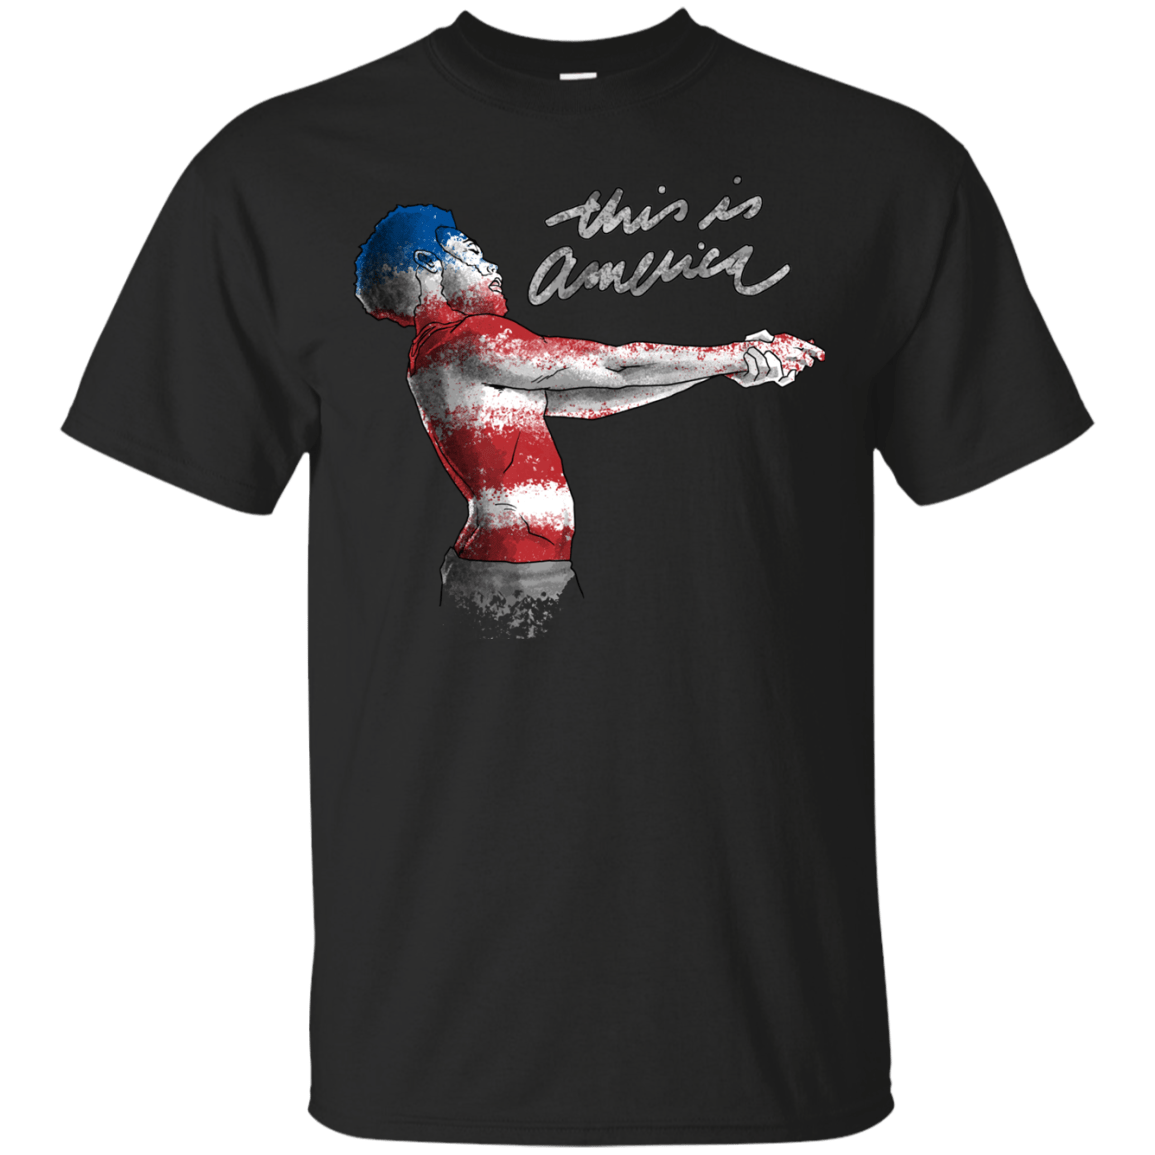 T-Shirts Black / S America T-Shirt